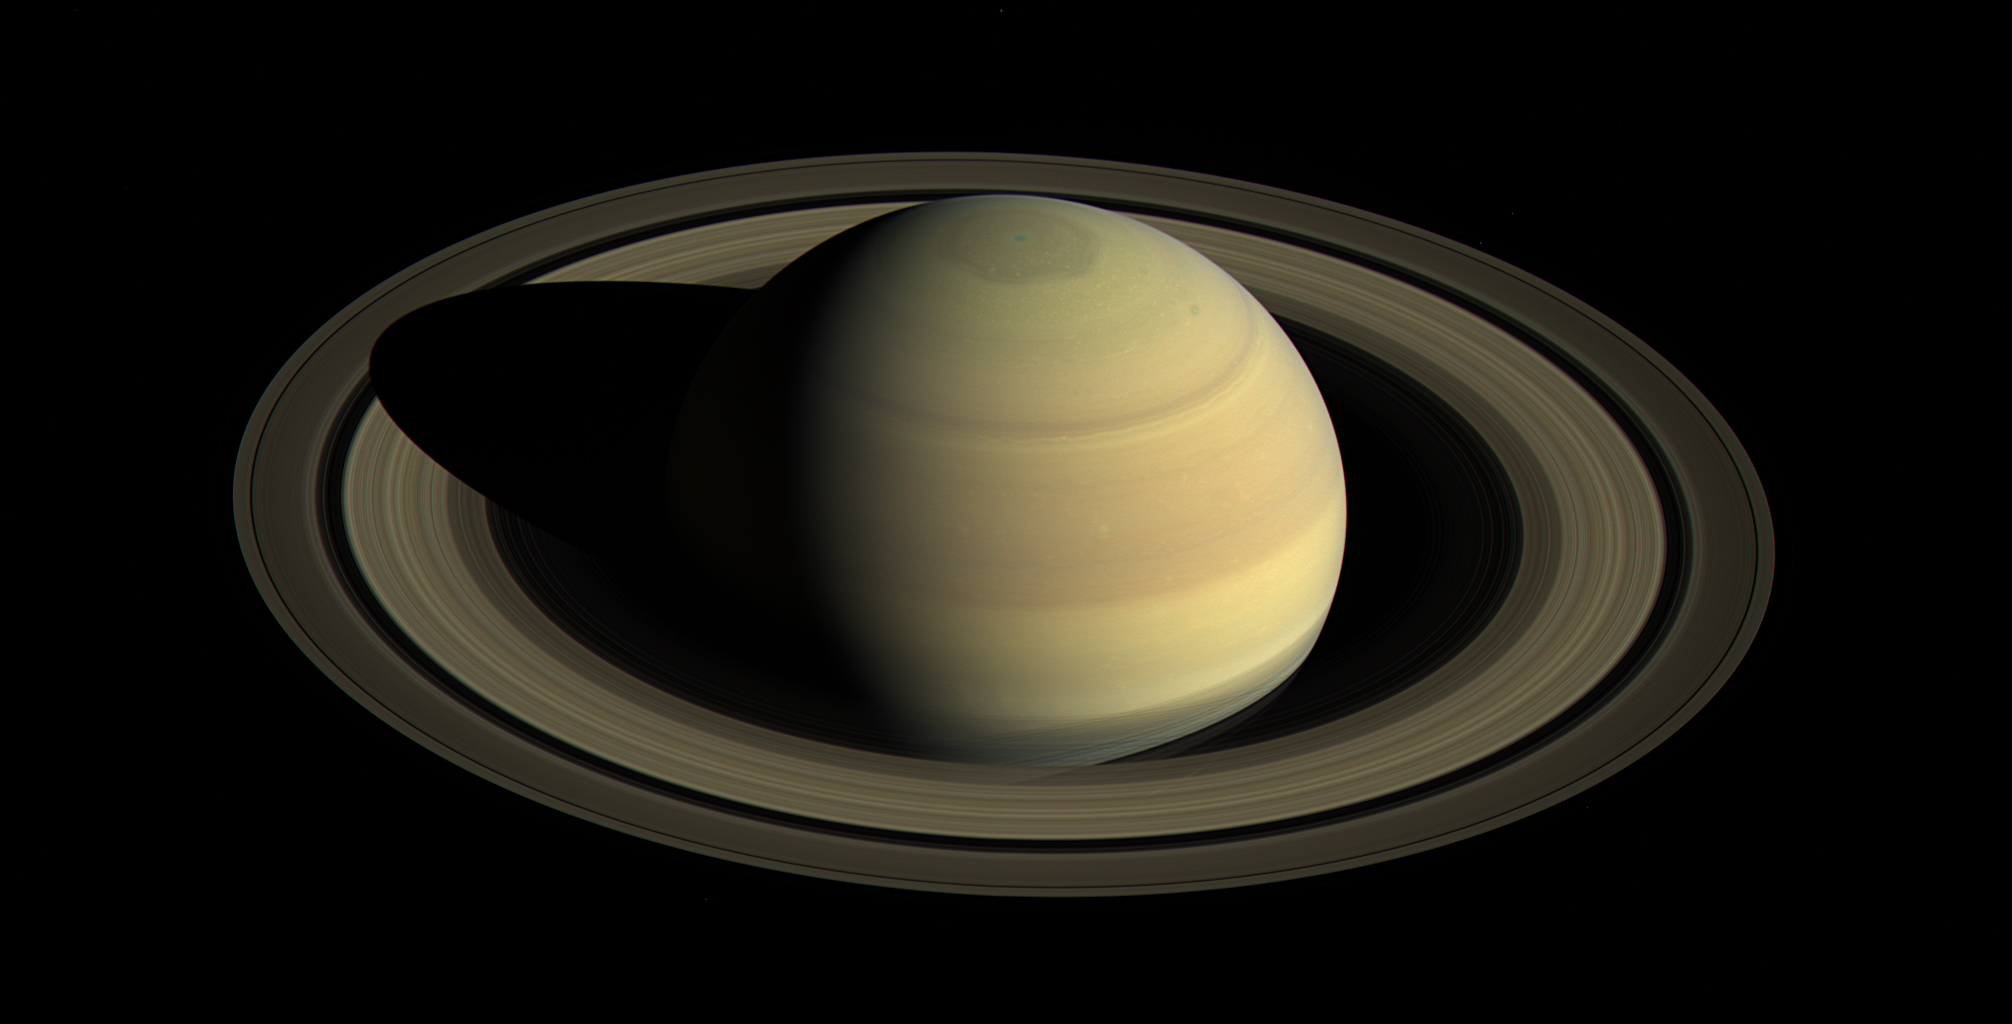 Saturne photographiée par la sonde Cassini le 25 avril 2016. © Nasa, JPL-Caltech, Space Science Institute